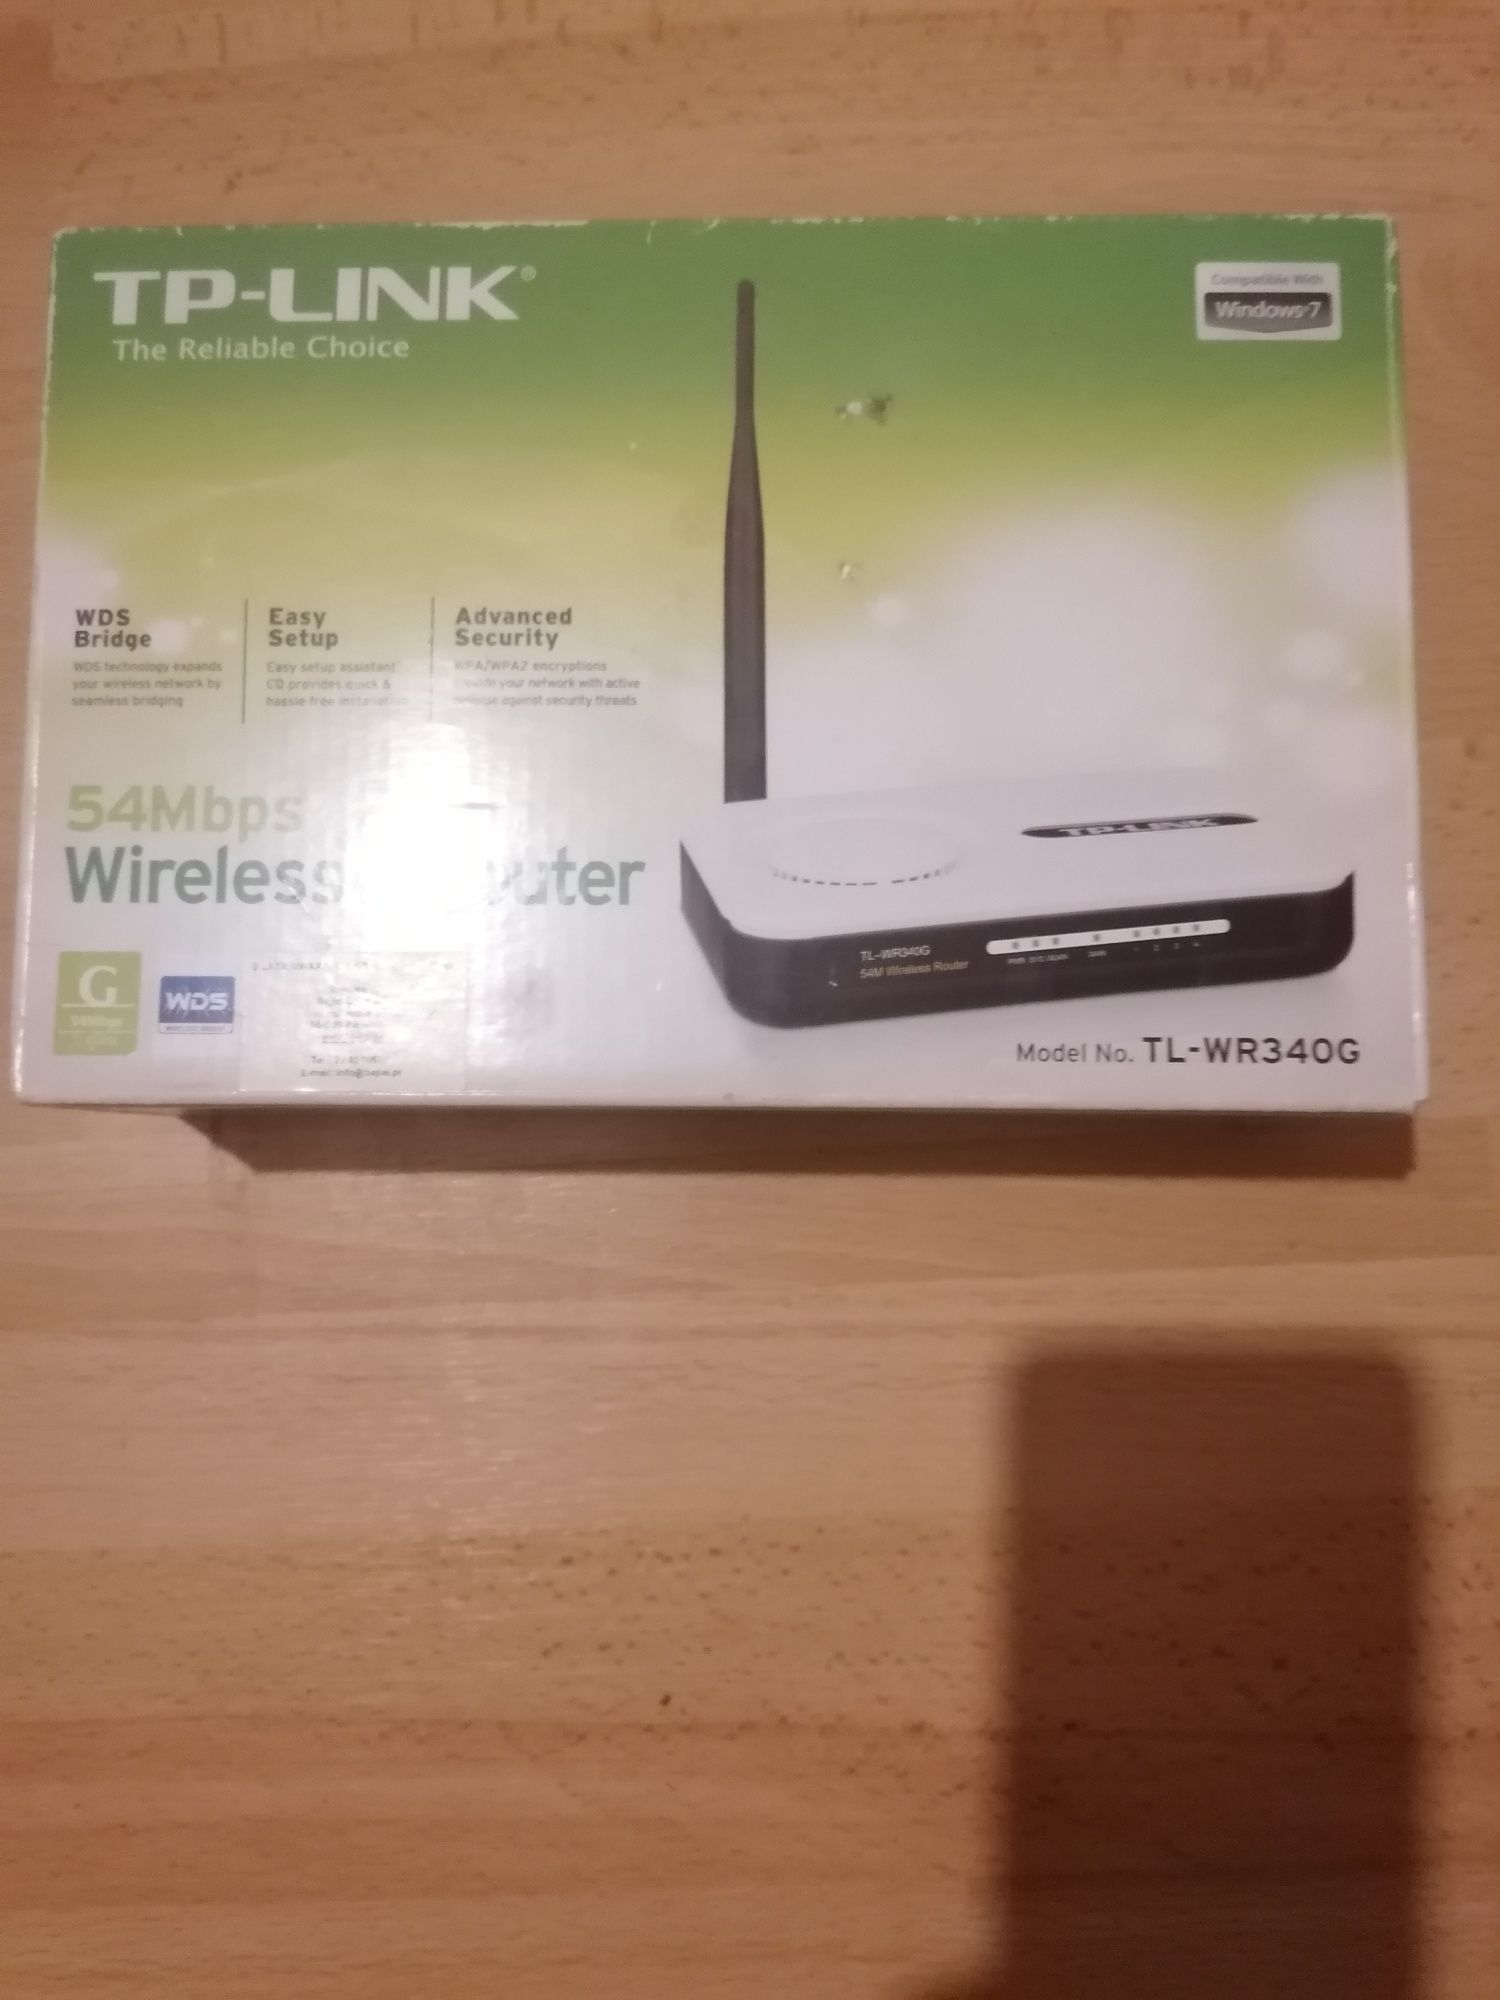 Router model TP-LINK